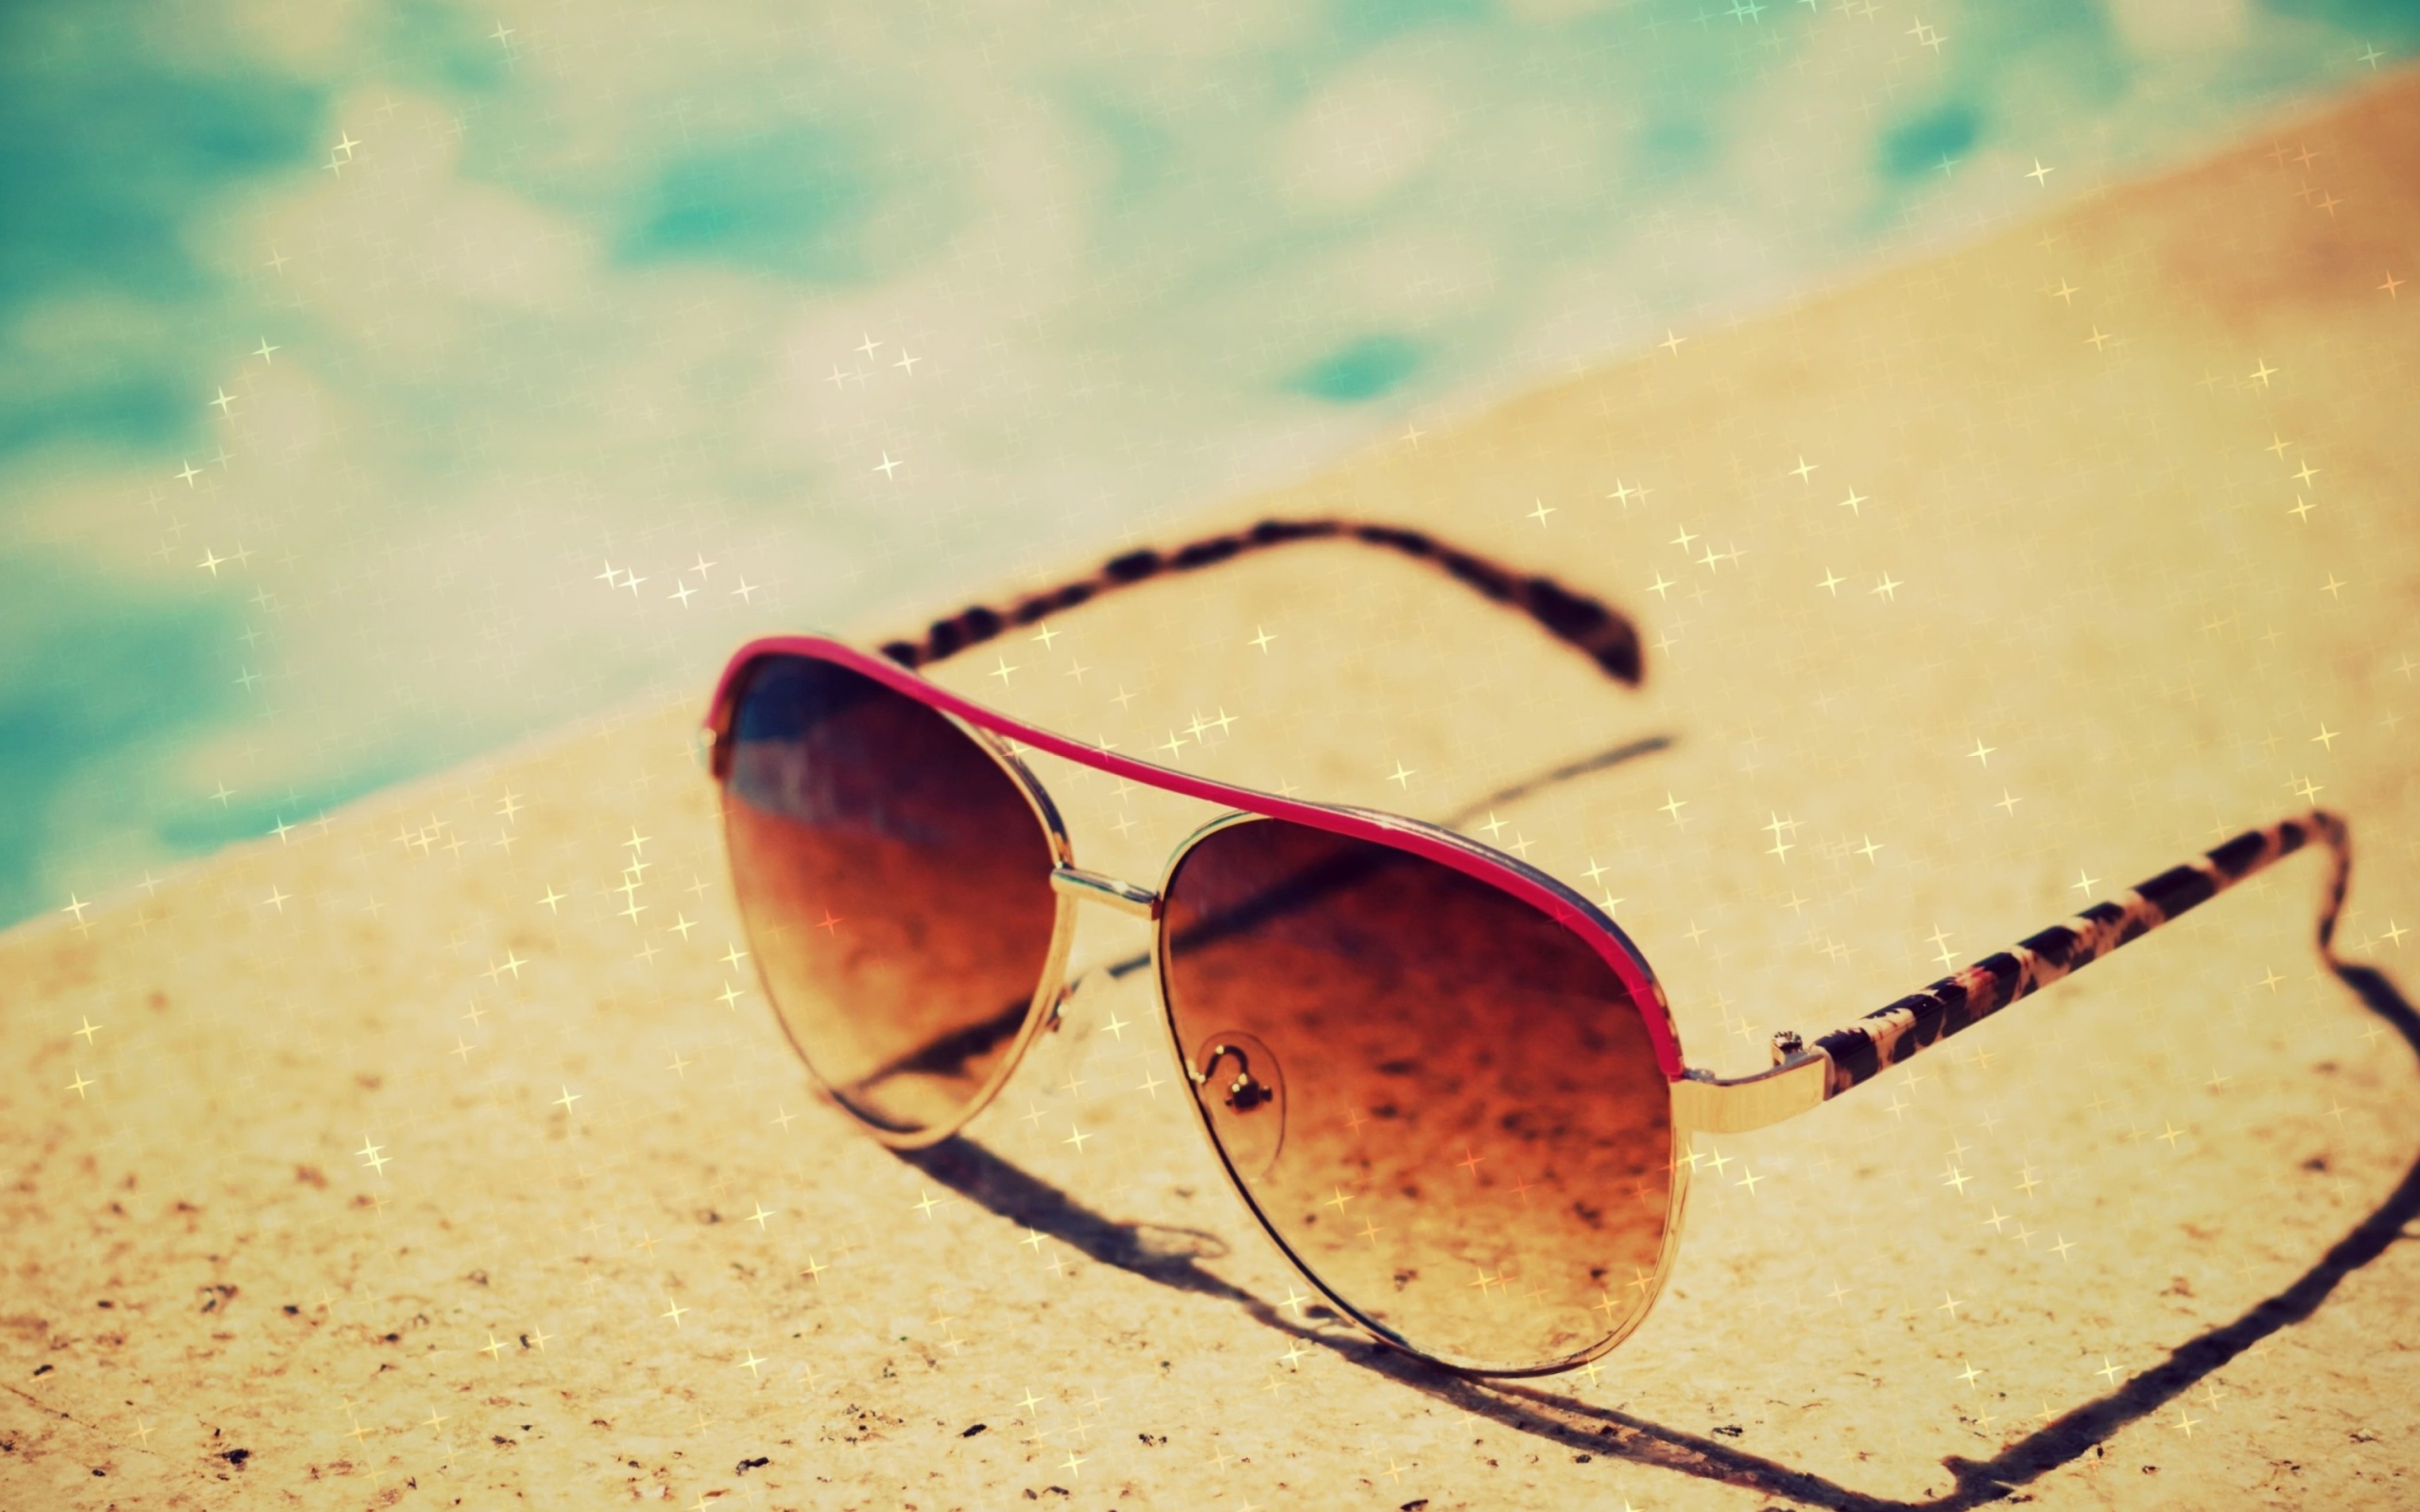 Das Sunglasses By Pool Wallpaper 2560x1600